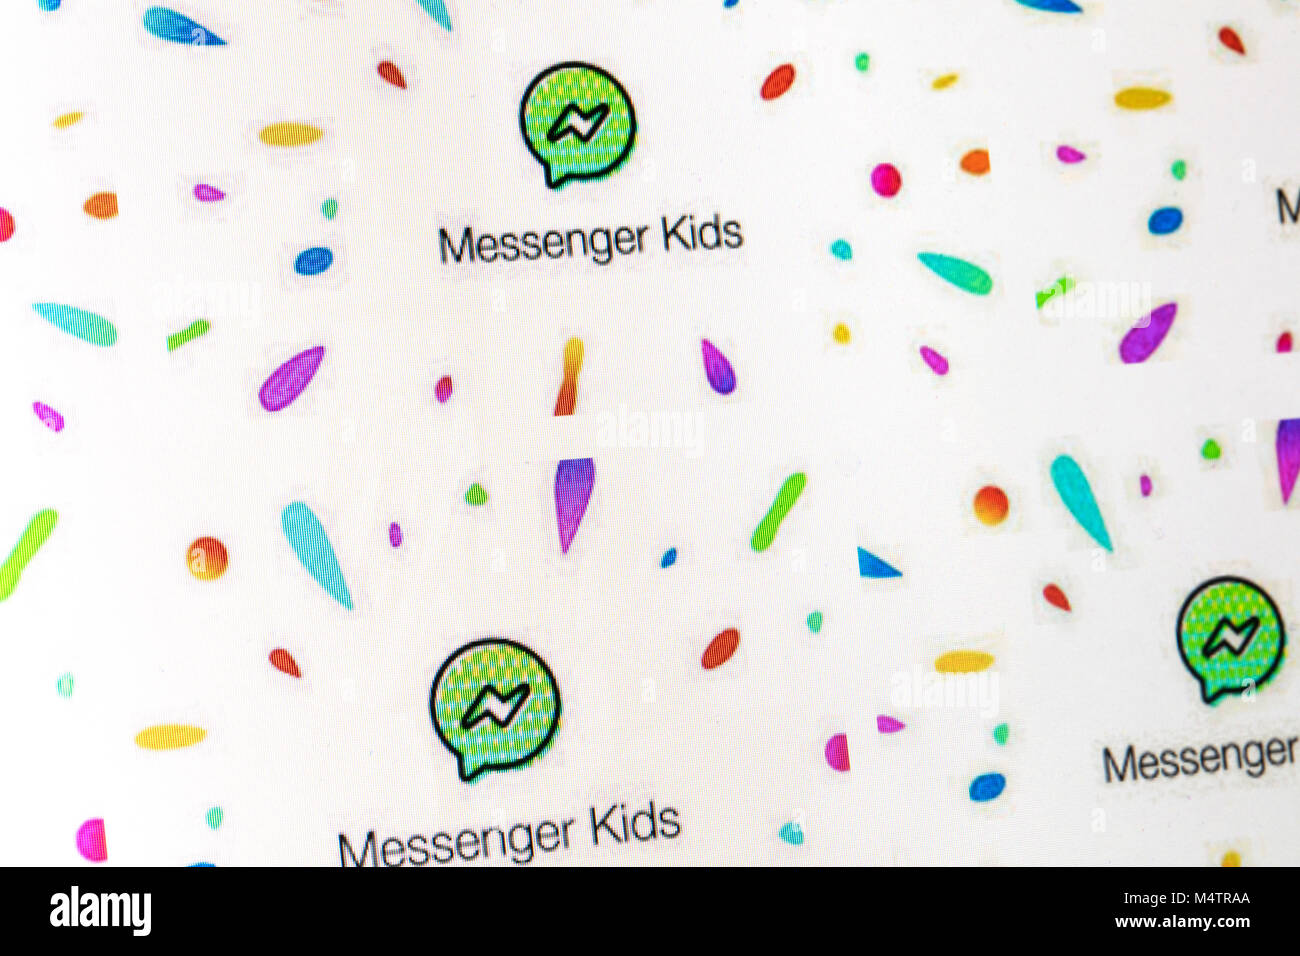 LONDON, Regno Unito - 18 febbraio 2018: Facebook Messenger logo bambini sullo schermo di un computer. Facebook Messenger kids è un social media chat app progettate per i bambini. Foto Stock